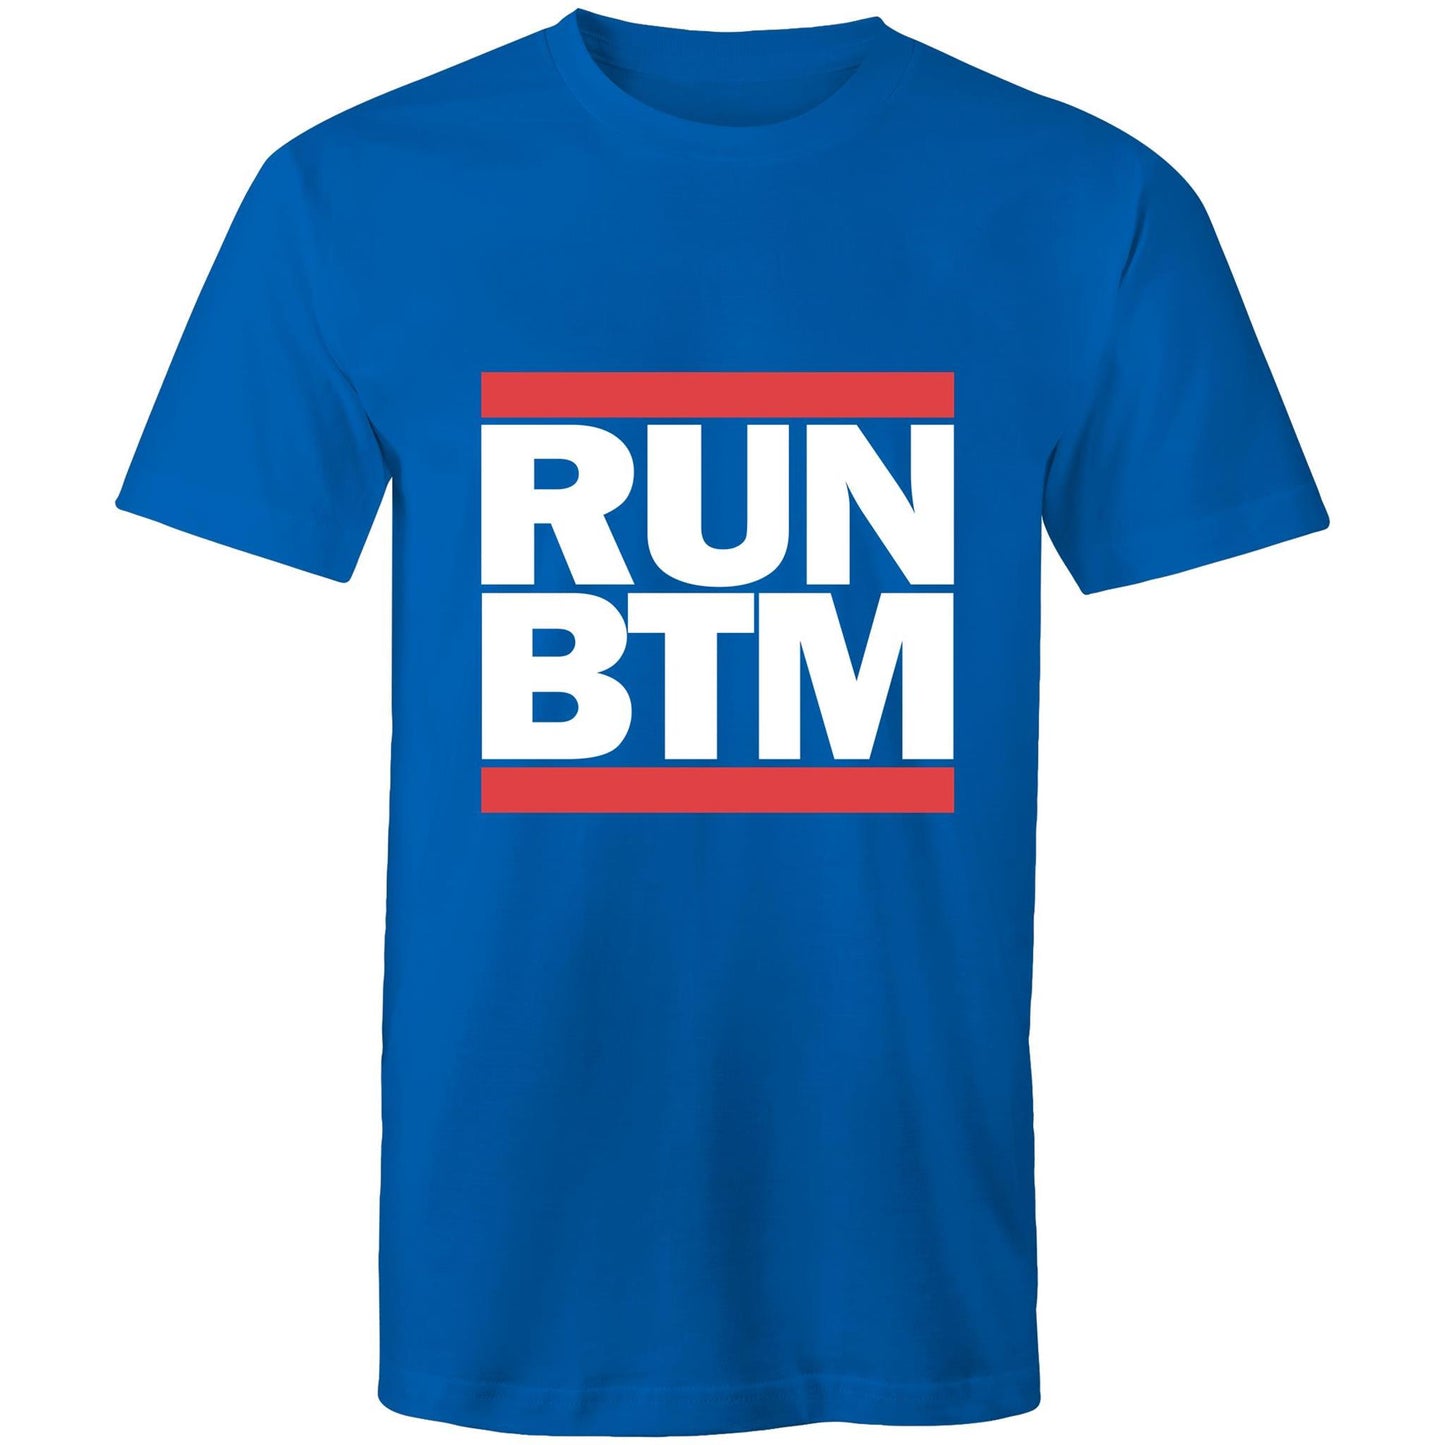 RUN BTM (White Font) - AS Colour Staple - Mens T-Shirt